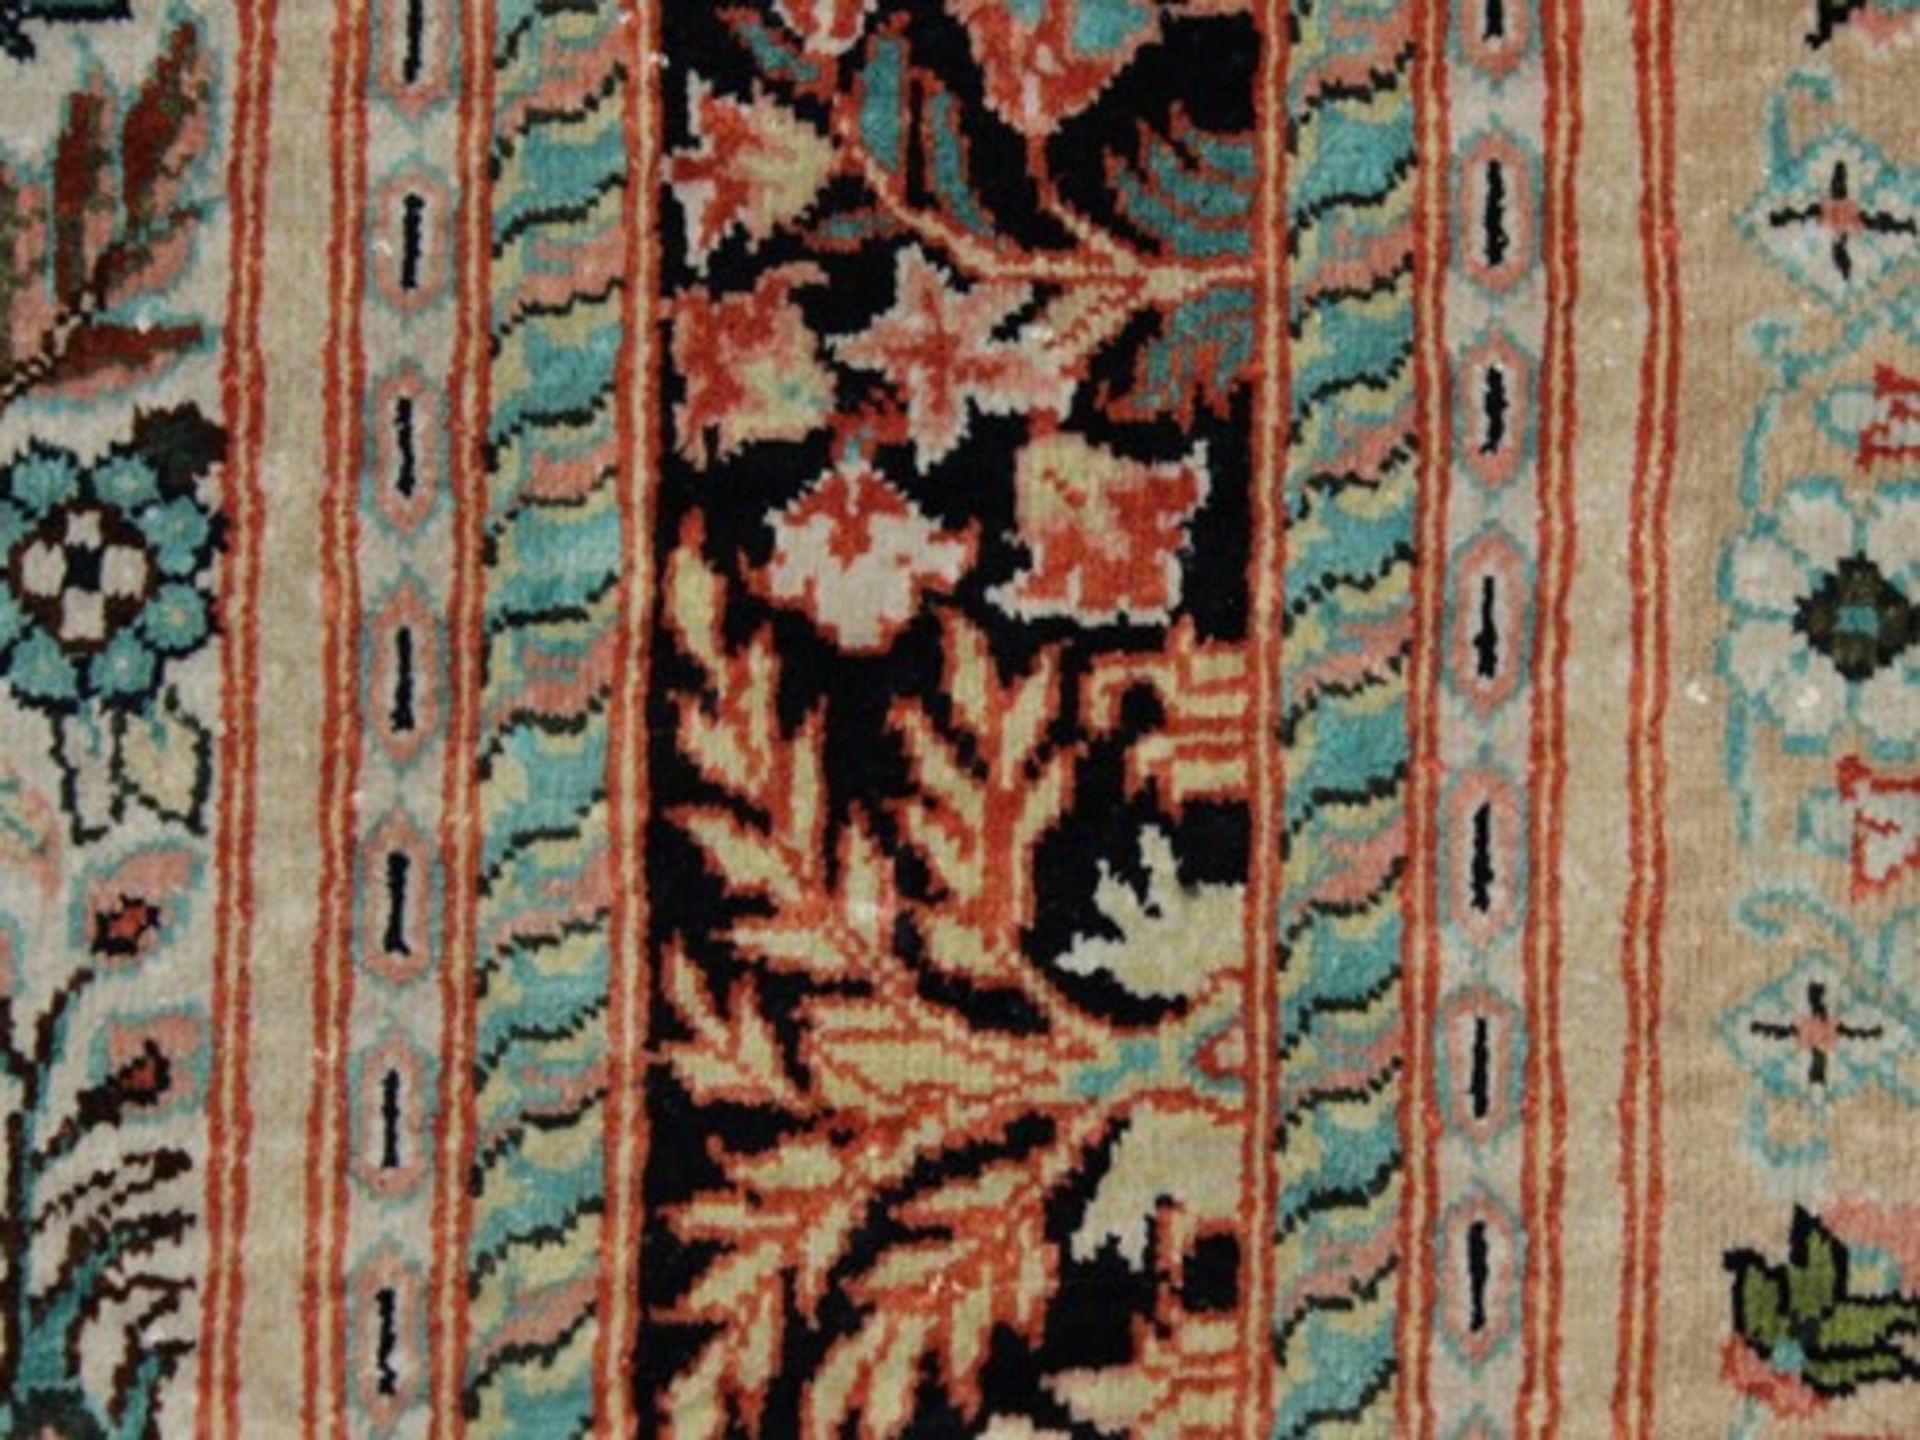 OrientseidenbrückeSeide/Seide, Gebetsteppich, floral, Nische mit Vase u. Ampel, dunkle Hauptbordüre, - Image 2 of 3